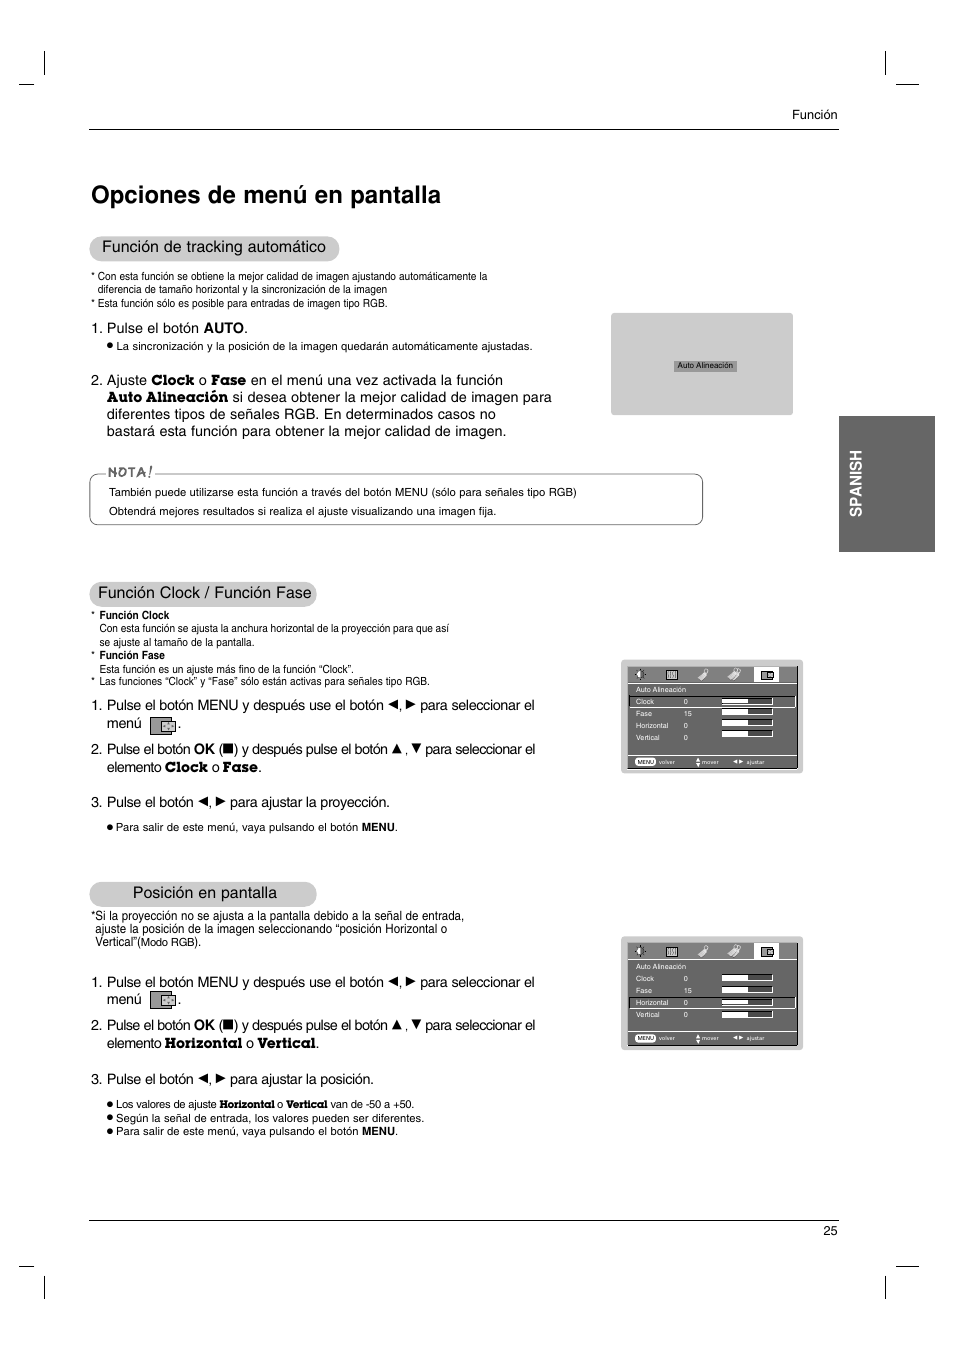 Opciones de menú en pantalla, Sp anish, Posición en pantalla | Función clock / función fase, Función de tracking automático | LG BX220 Manual del usuario | Página 25 / 36